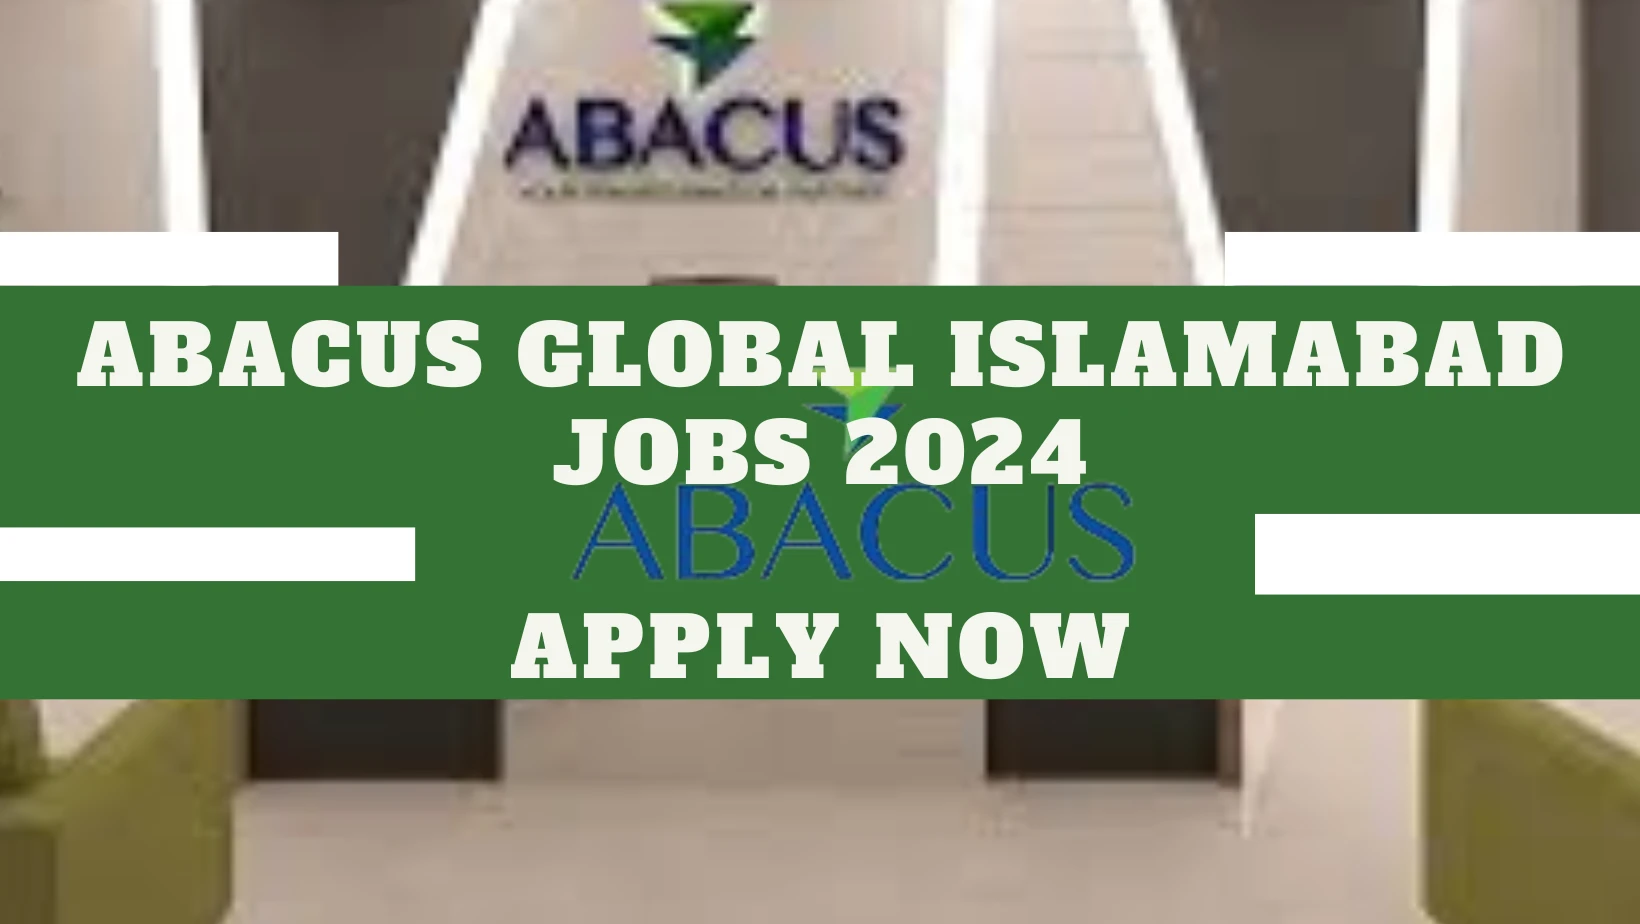 Abacus Global Islamabad Jobs